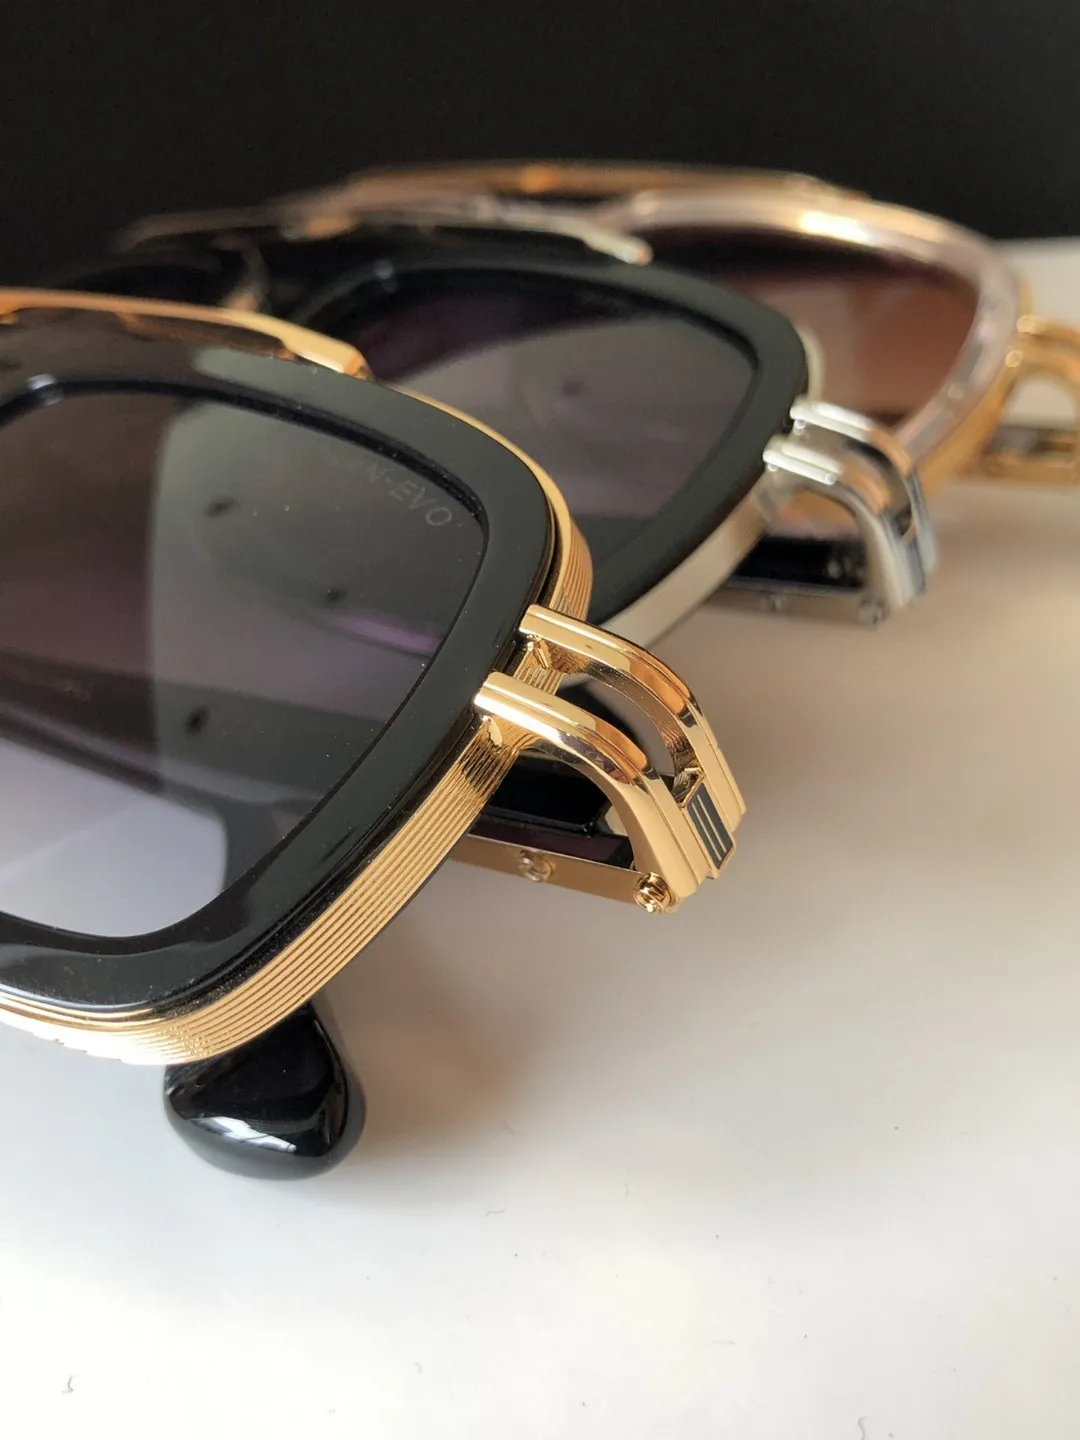 A DITA LXN-EVO DTS403 Top Original Original hochwertiger Designer-Sonnenbrillen Herberühmter modischer Retro Luxury Brand Braut mit Eyeglass Fashion DE226T